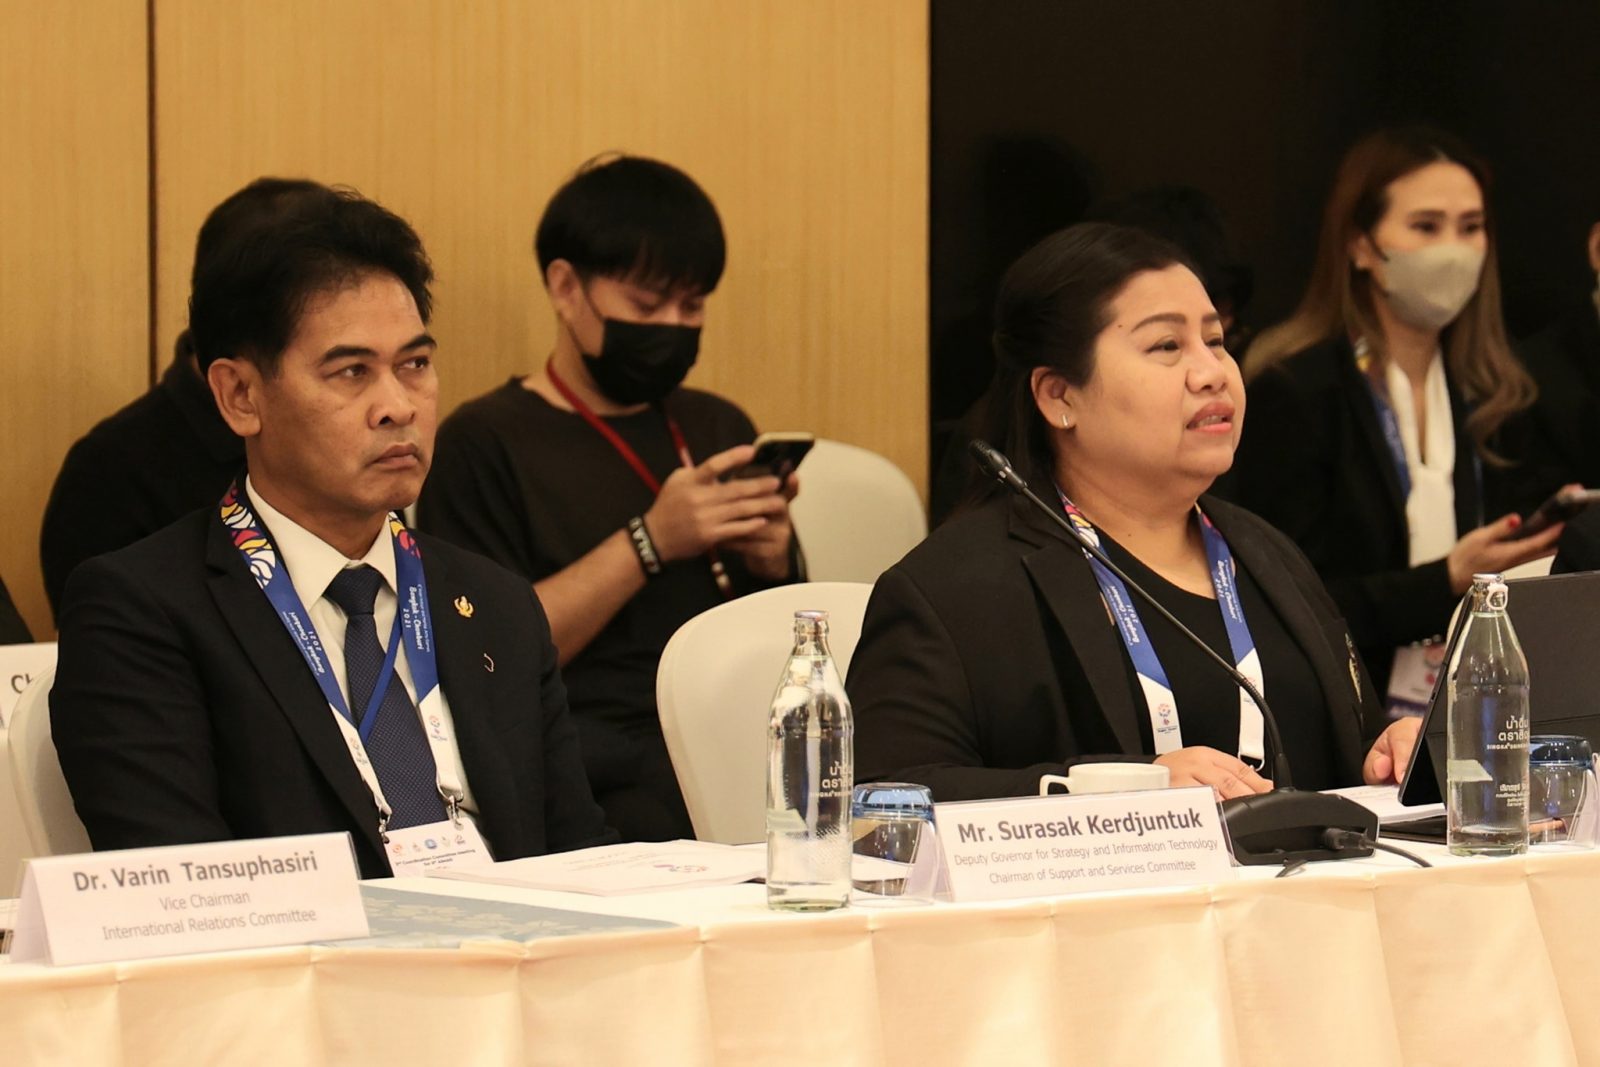 ผลการประชุมติดตามความคืบหน้าการเตรียมความพร้อมเป็นเจ้าภาพจัดการแข่งขันกีฬาเอเชียนอินดอร์และมาเชี่ยลอาร์ทเกมส์ ครั้งที่ 6 (2nd Coordination Committee Meeting) ร่วมกับสภาโอลิมปิกแห่งเอเชีย (OCA) ครั้งที่ 2 – ข่าวกีฬา